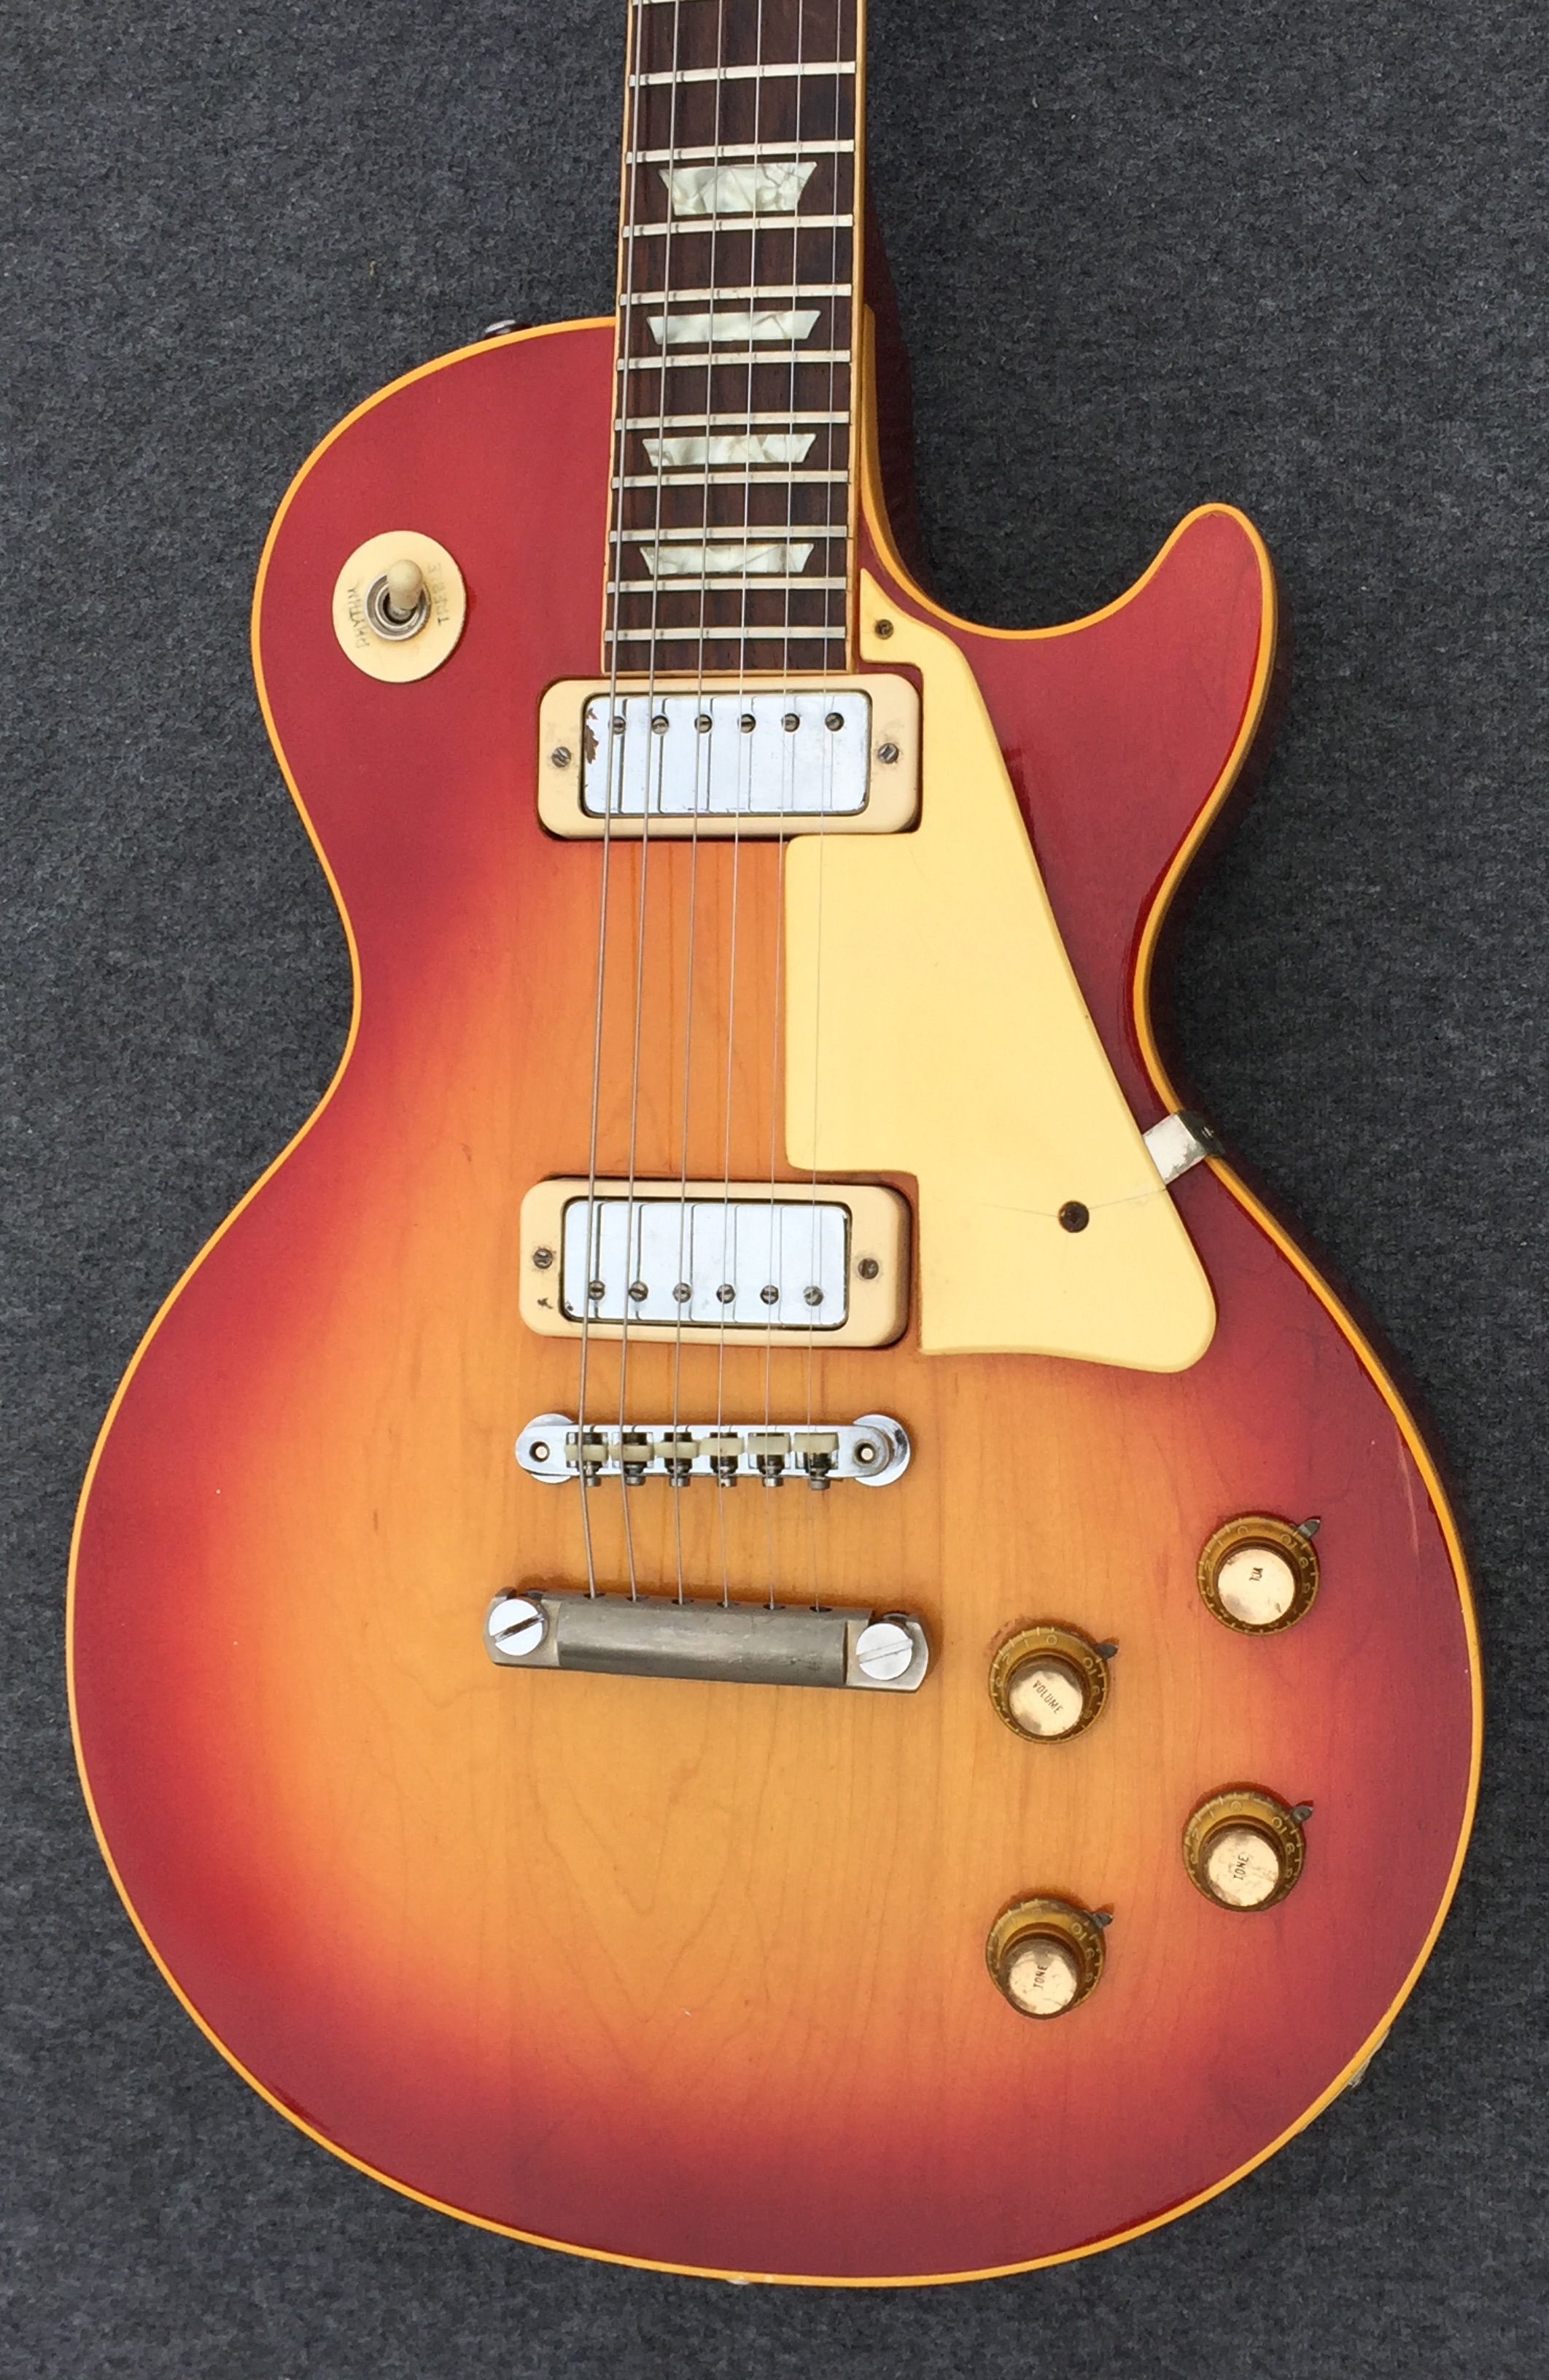 Gibson Les Paul Deluxe 1970 Cherry Sunburst Guitar For Sale Hendrix Guitars